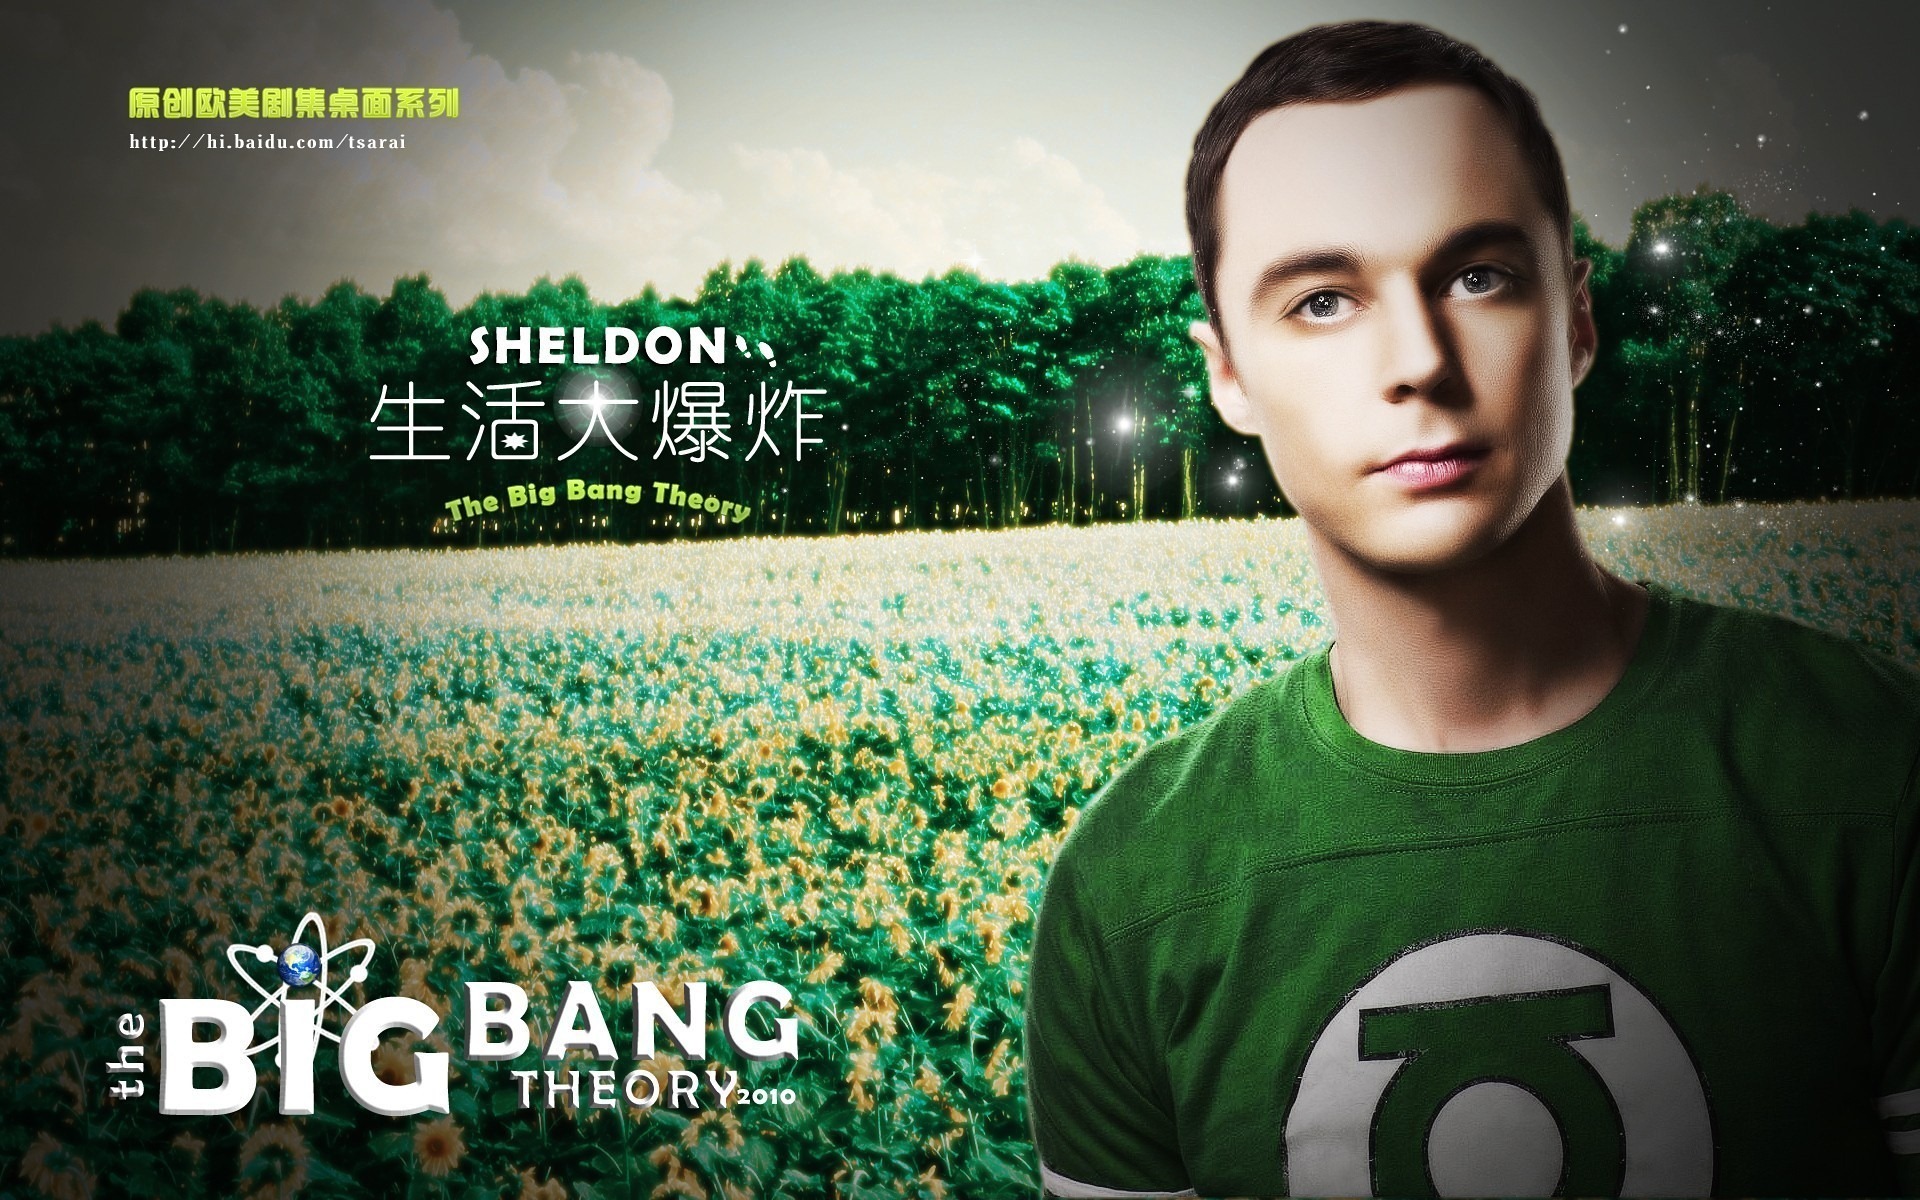 The Big Bang Theory 生活大爆炸 电视剧高清壁纸16 - 1920x1200